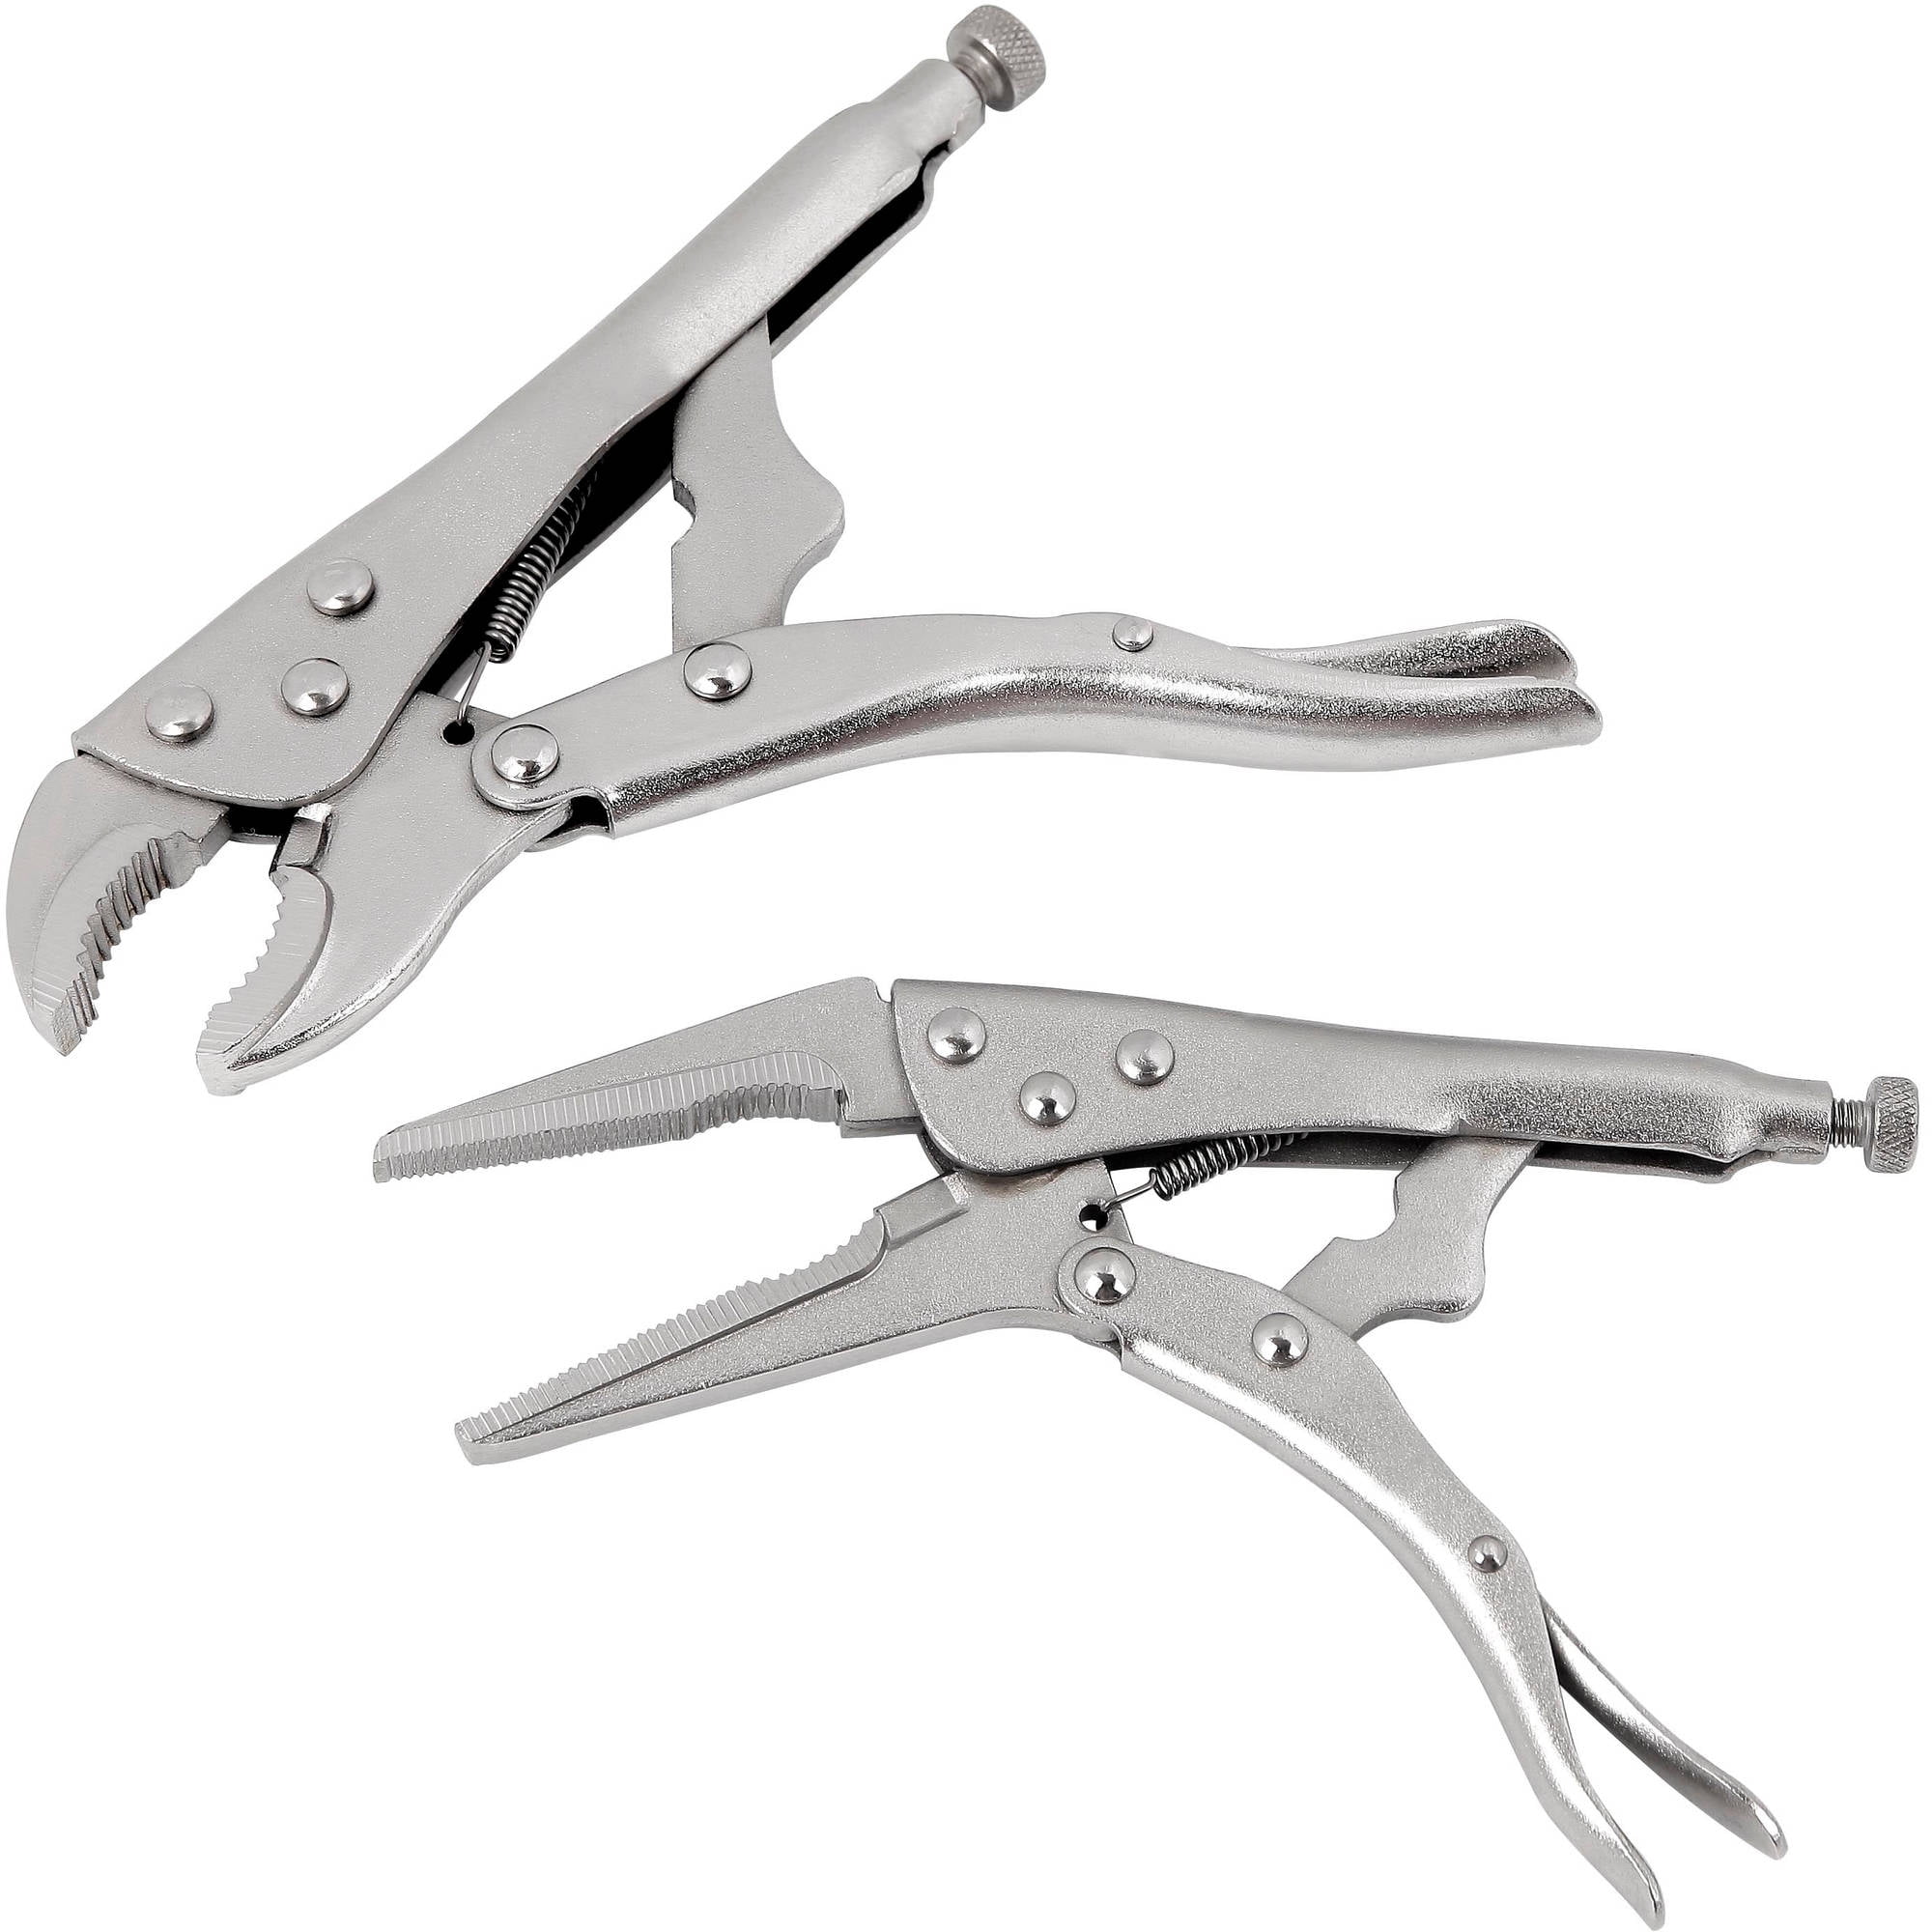 Hyper Tough Mini Pliers Set with Soft Grip Handles - 6 Pieces